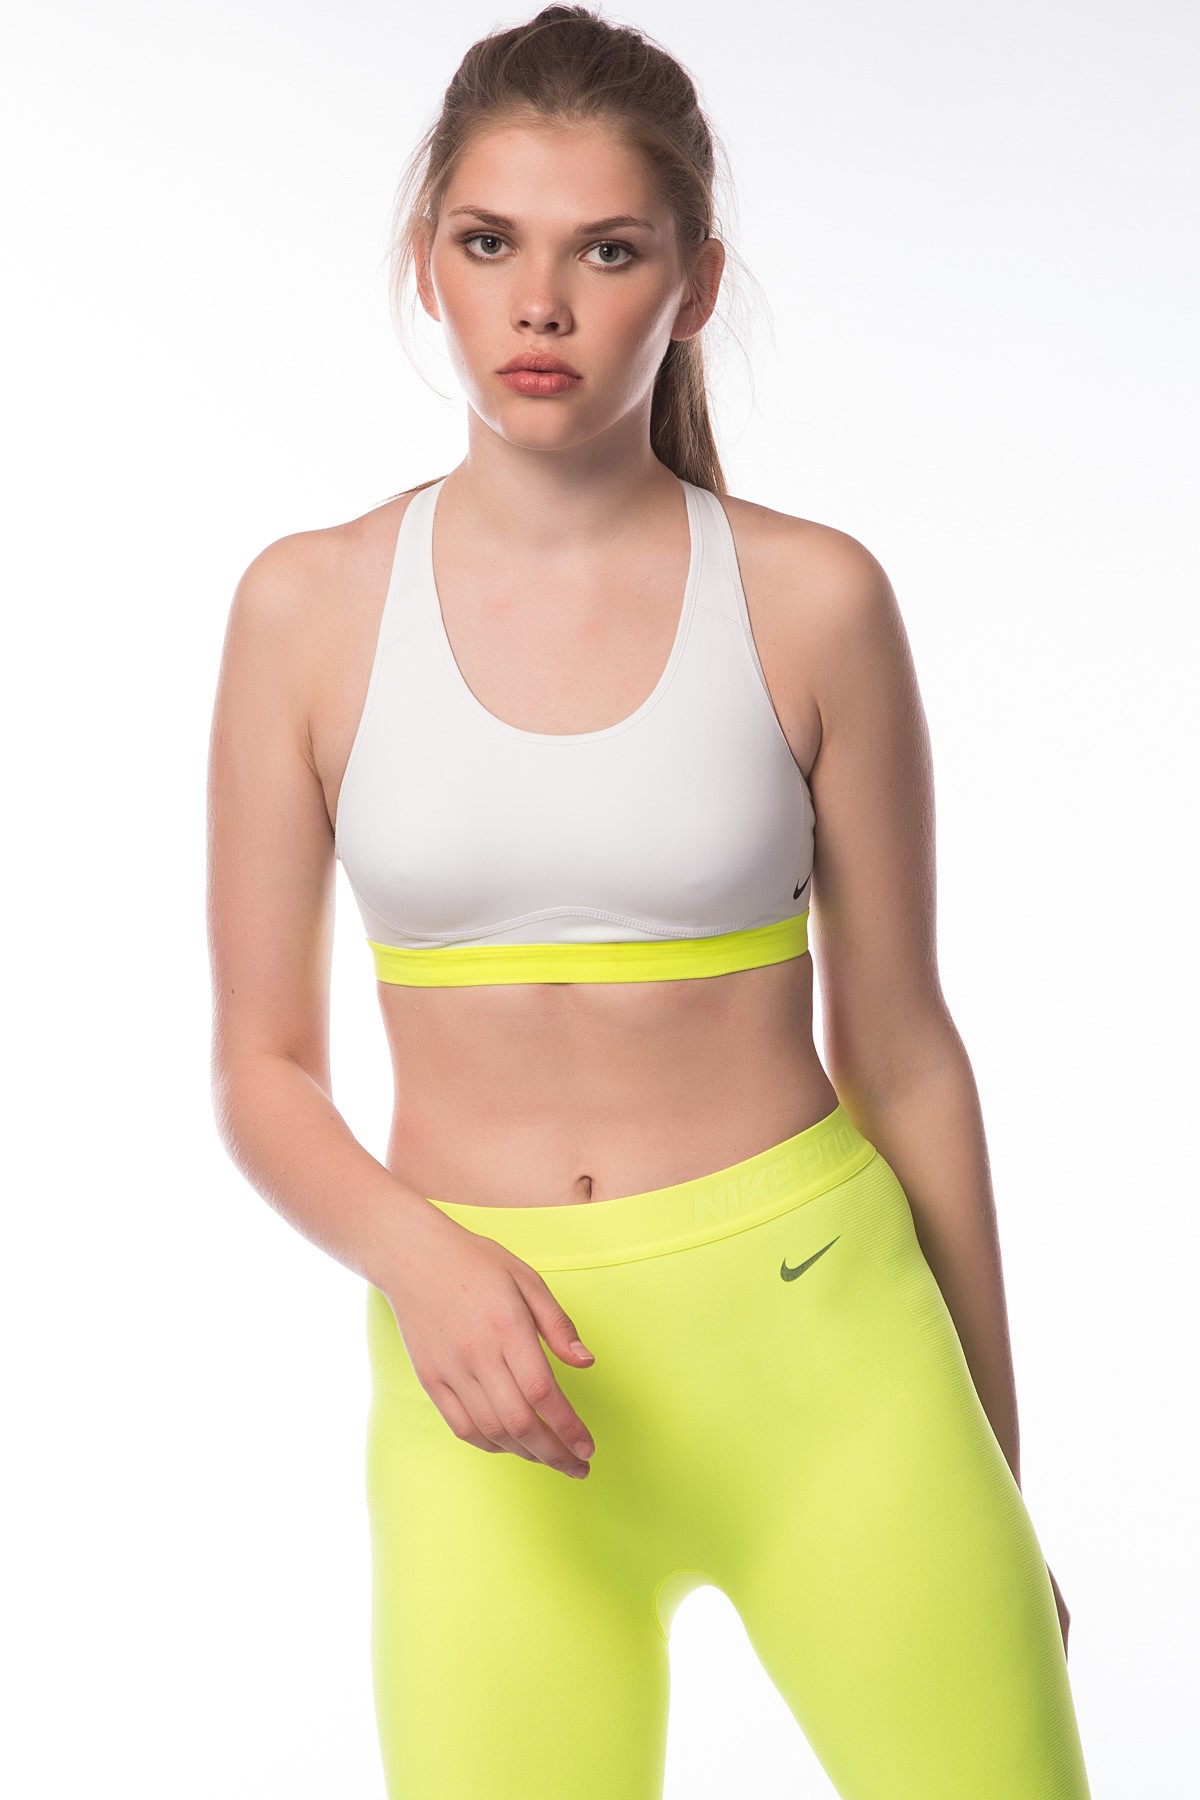 Nike Kadın Spor Sütyeni - PRO FIERCE BRA / BUSTIYER - 620279-100